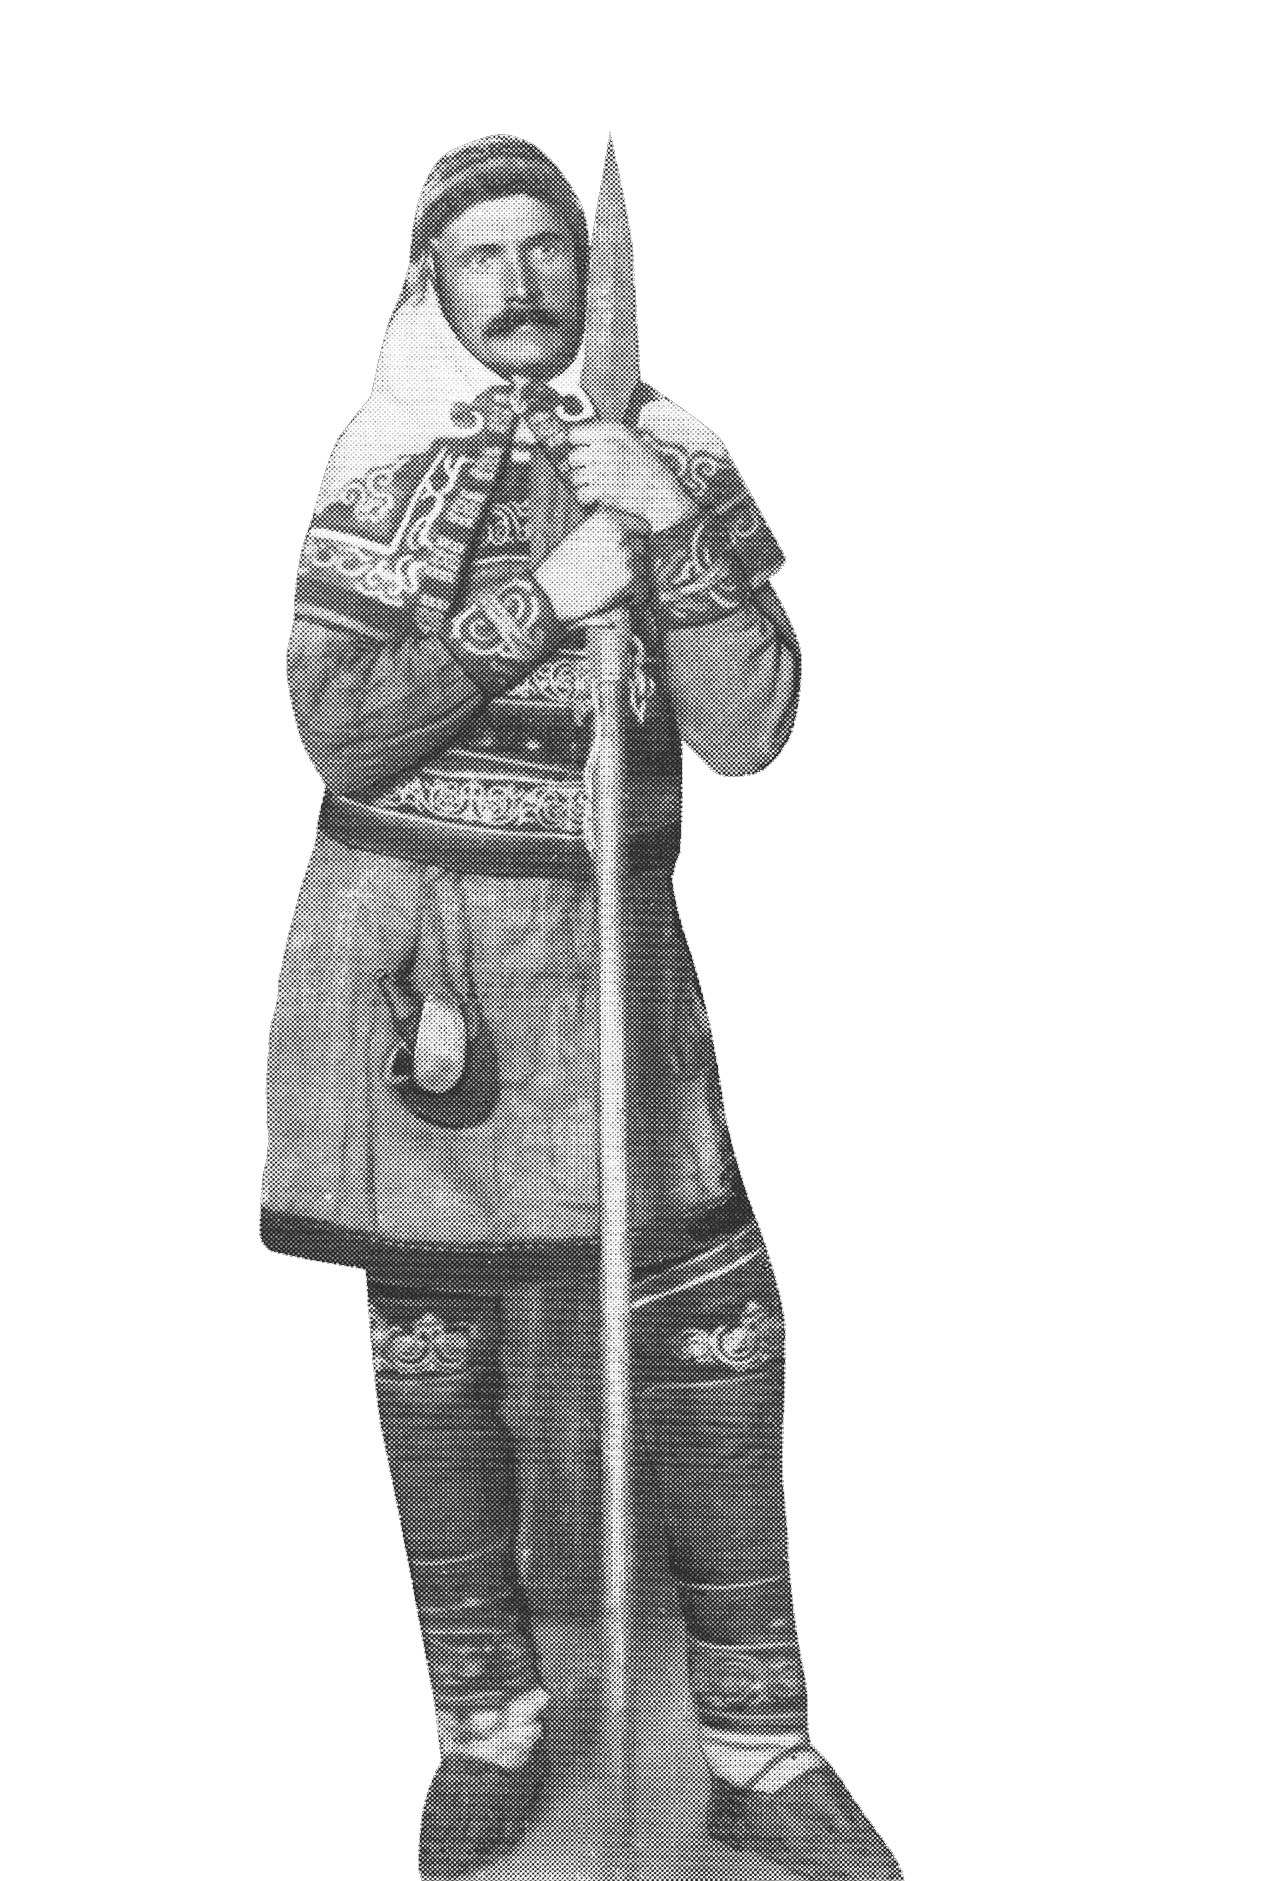 В.К. Арсеньев в удэгейском костюме. Хабаровск, 1910 г.